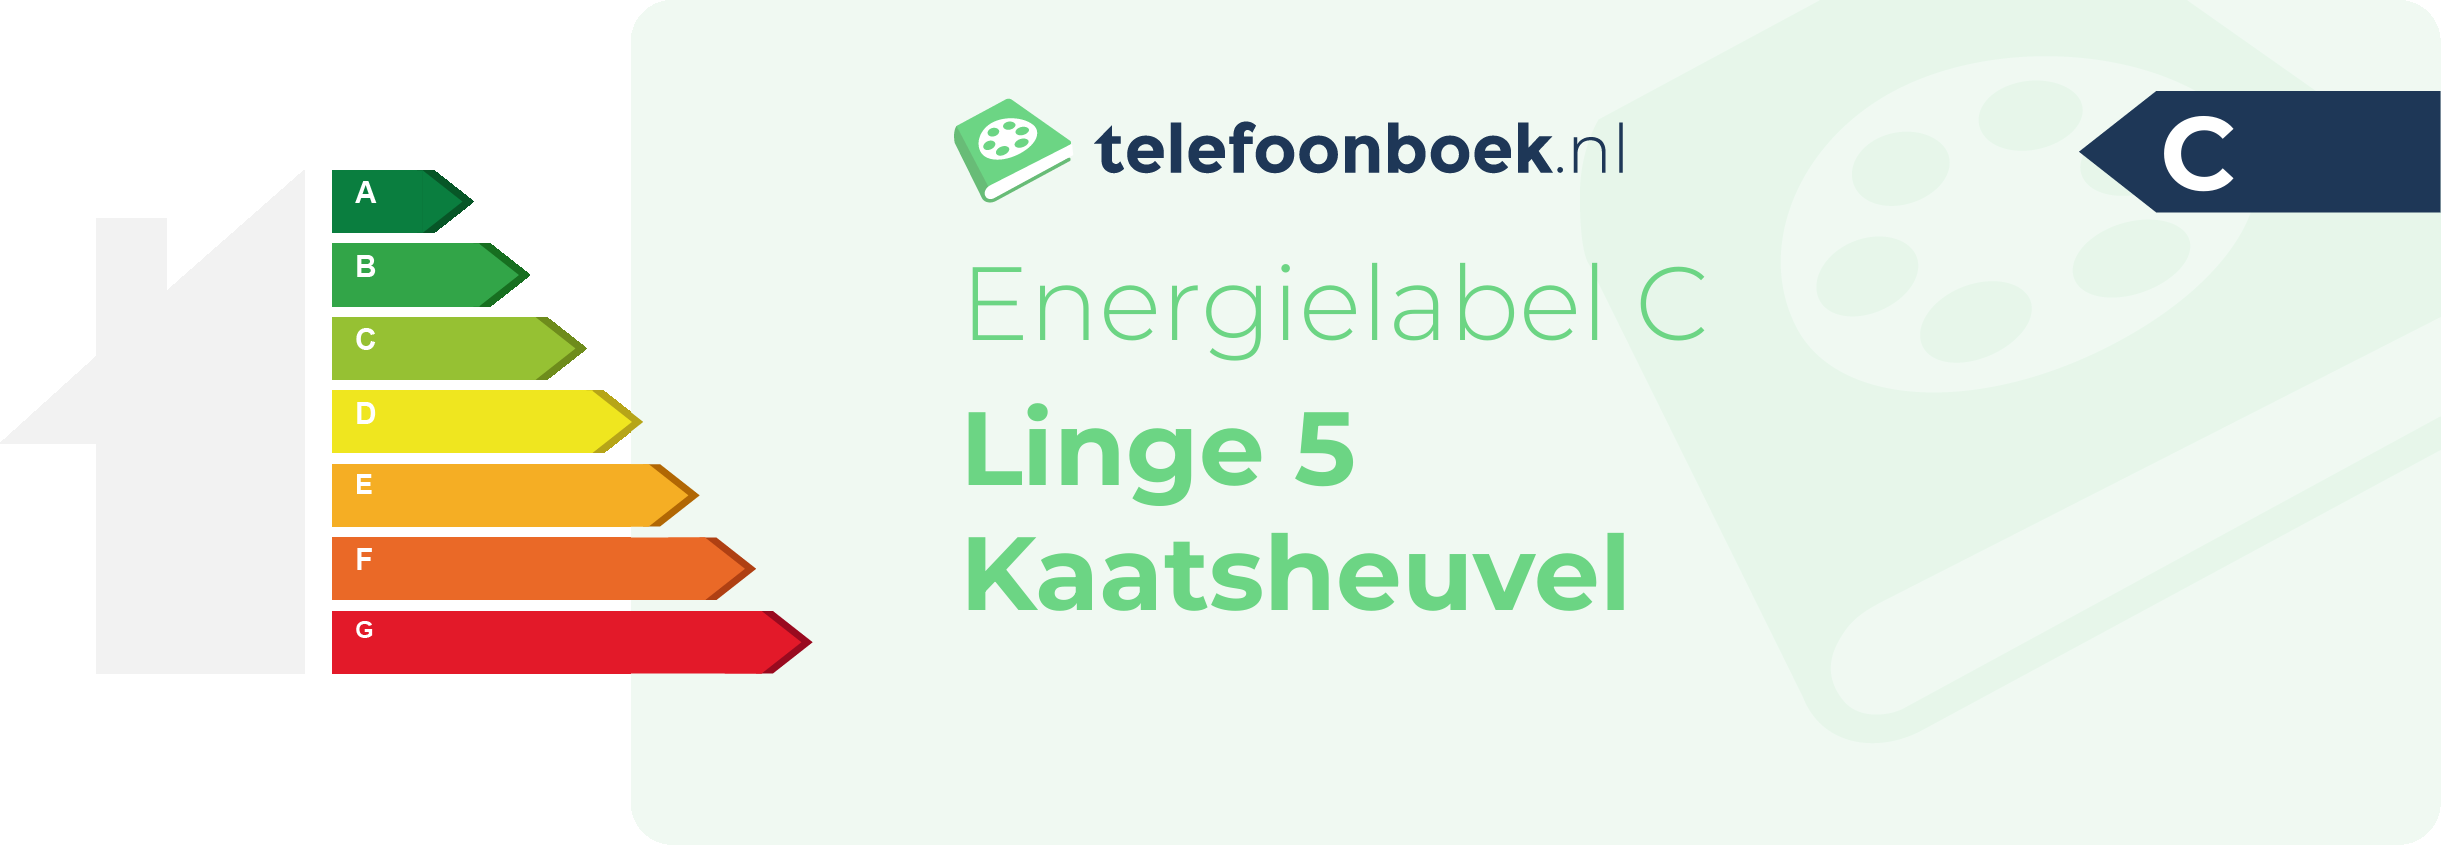 Energielabel Linge 5 Kaatsheuvel